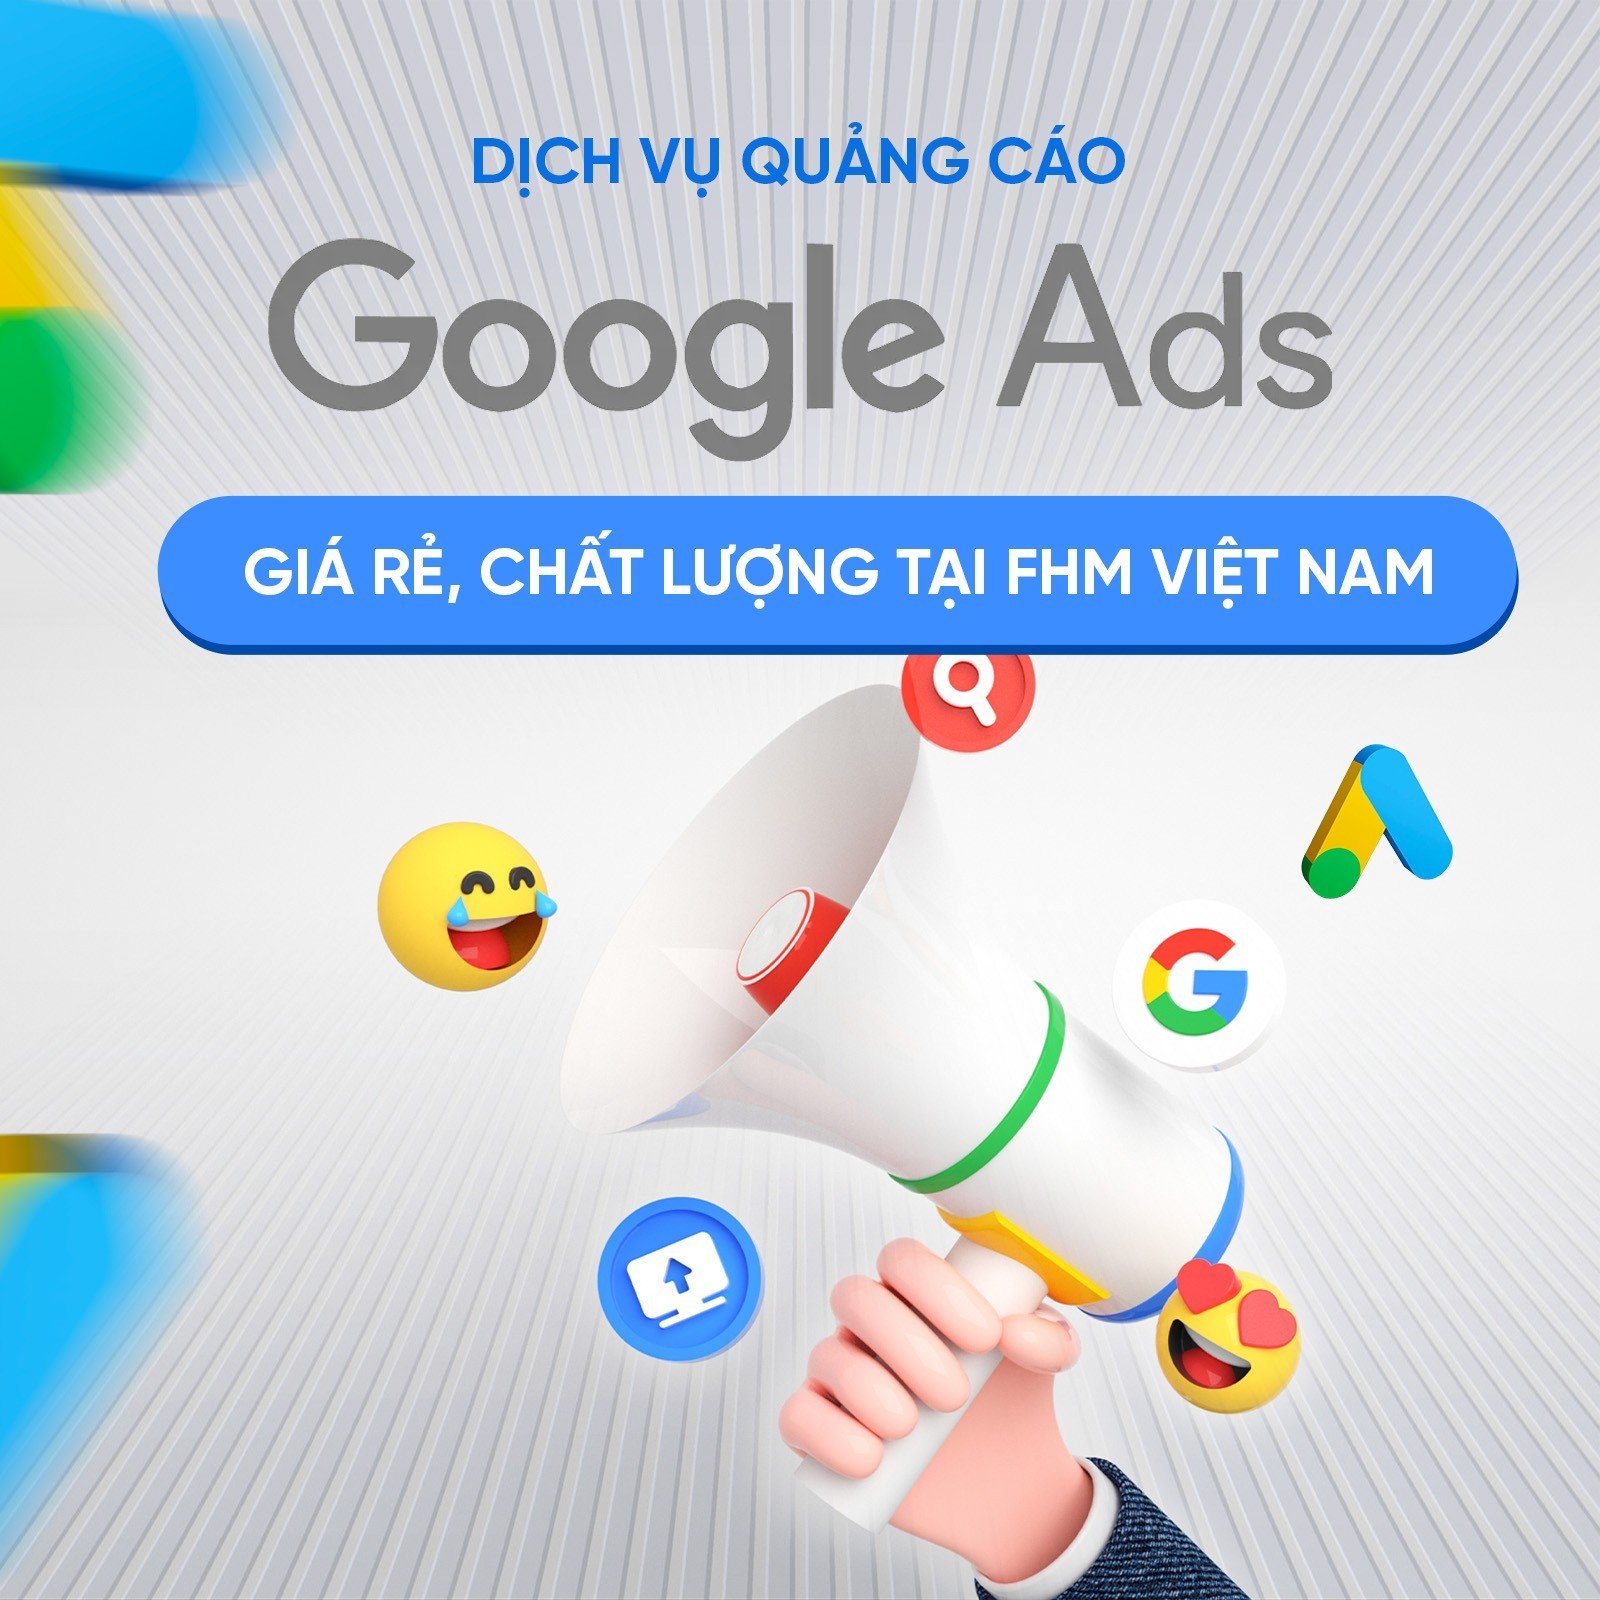 Dịch vụ chạy quảng cáo google adwords giá rẻ, chất lượng tại FHM Việt Nam